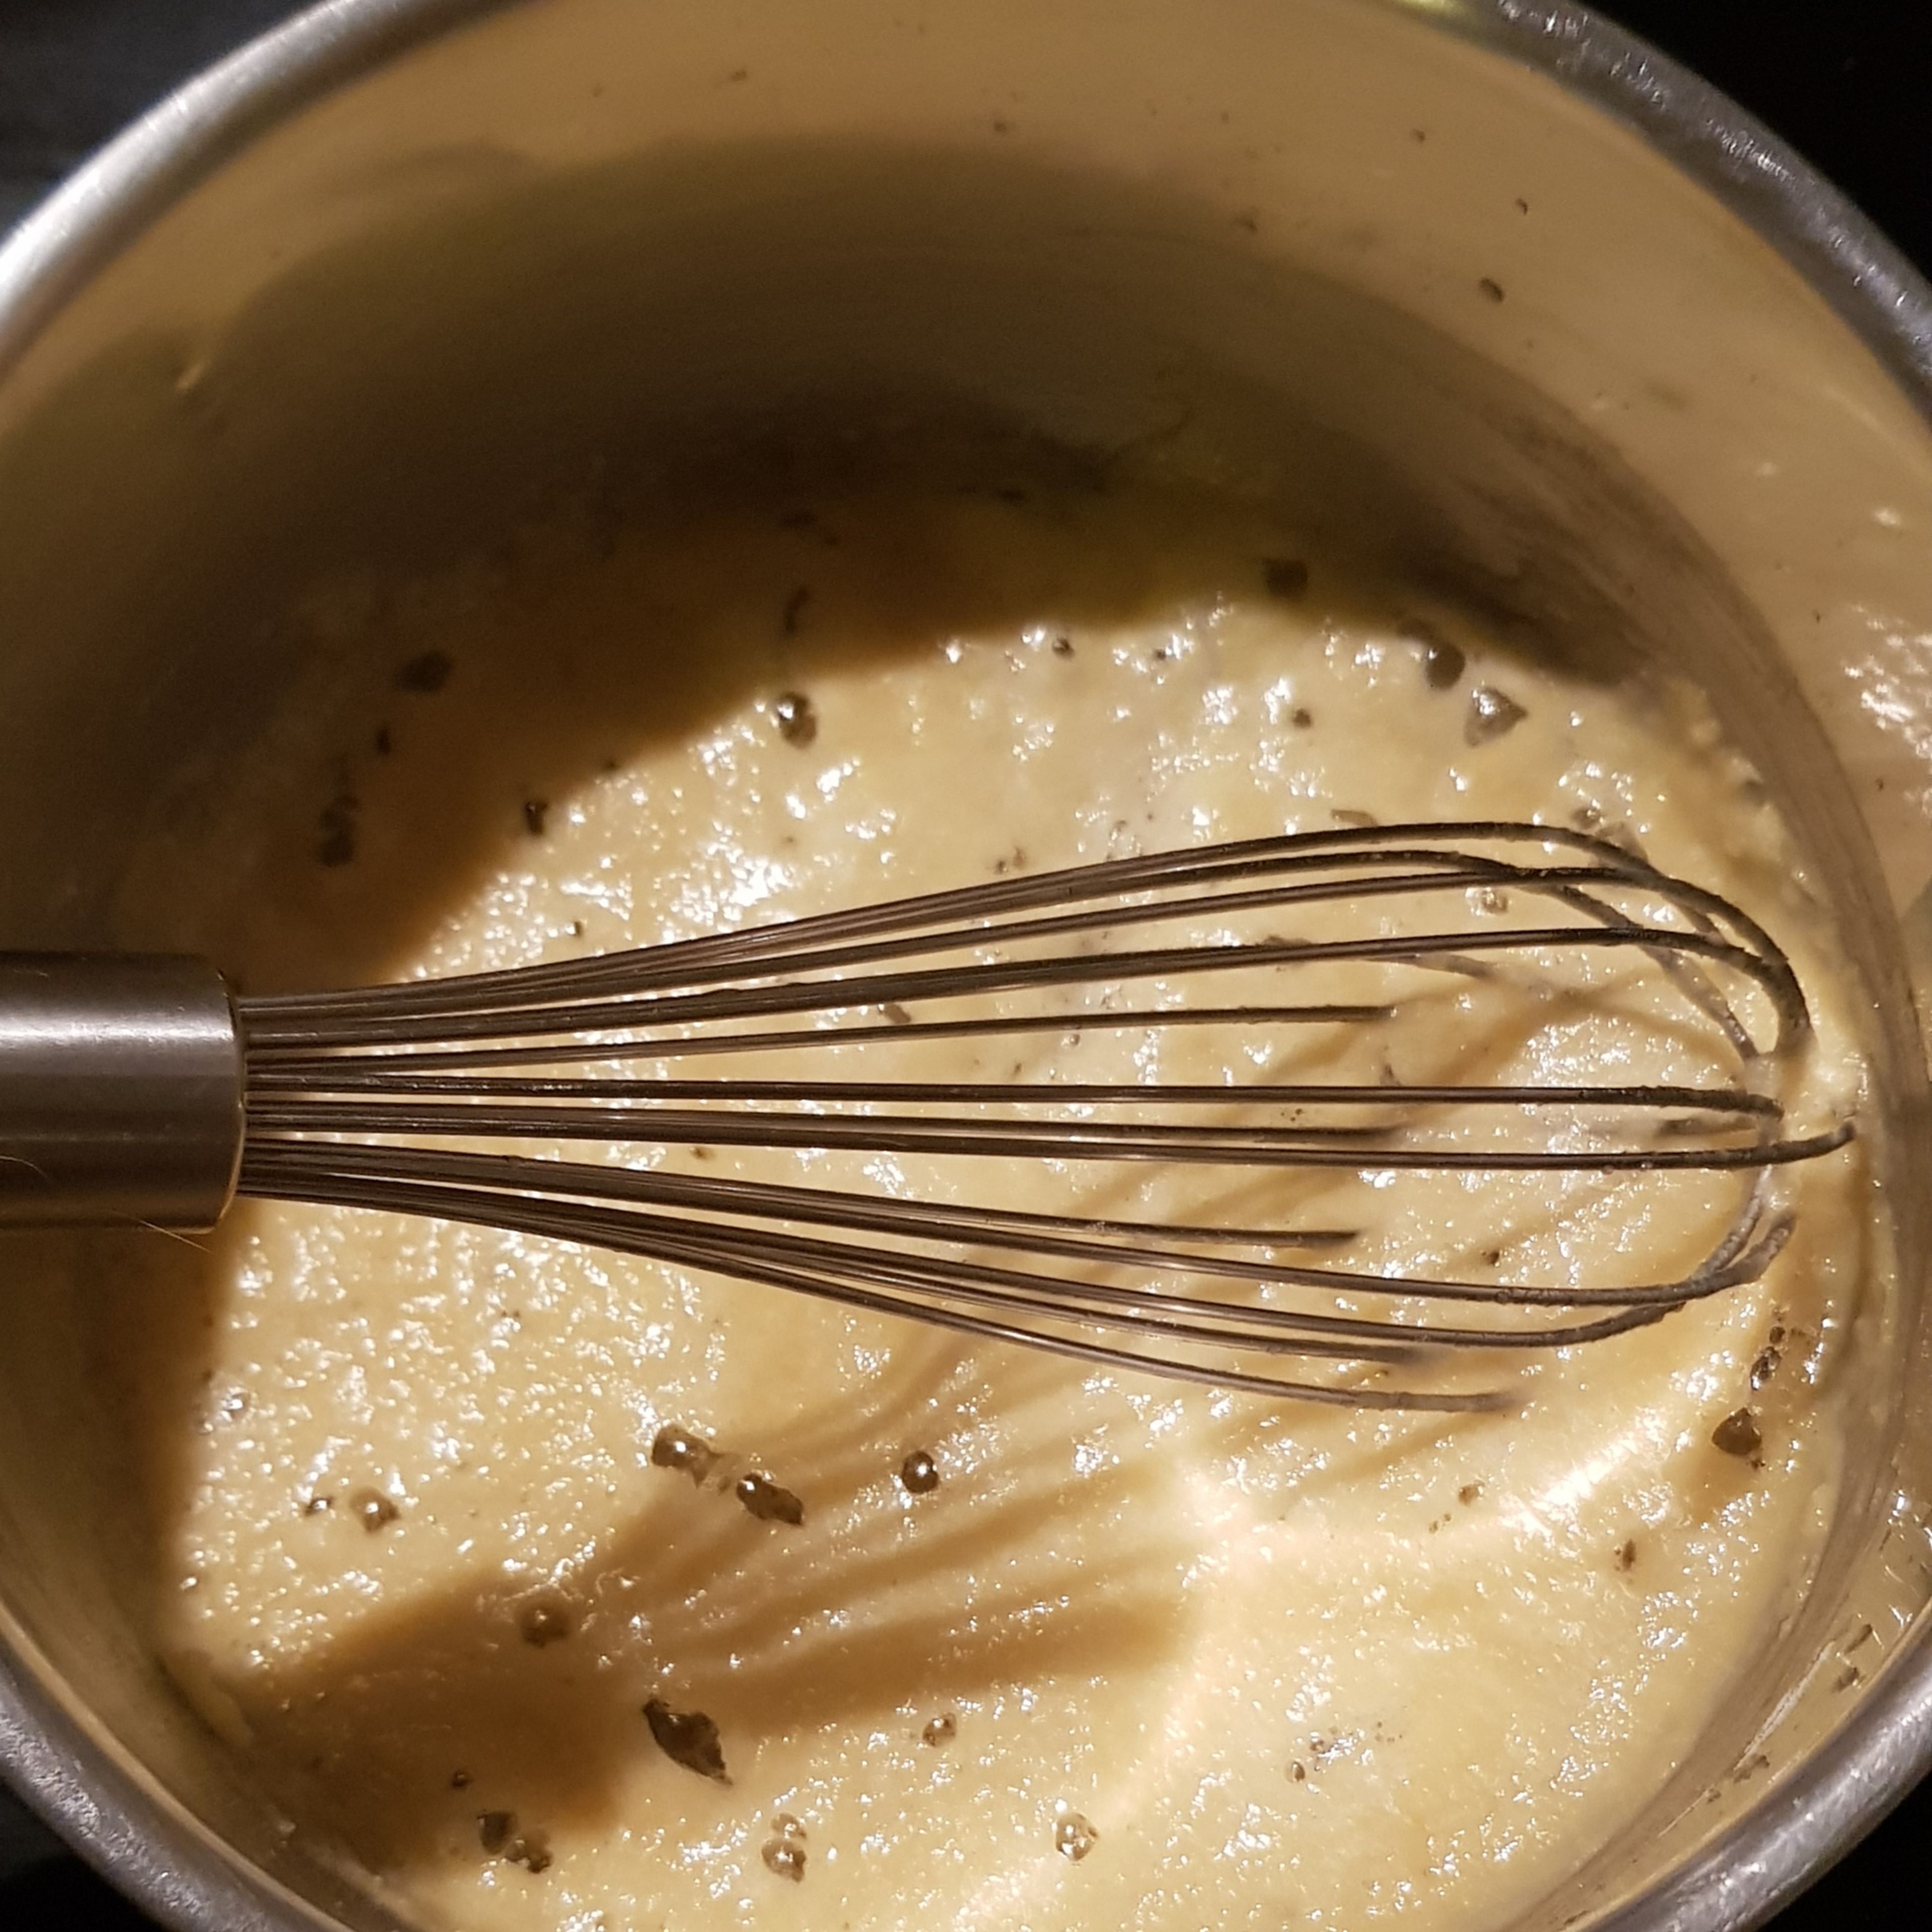 Butter in einem Kochtopf schmelzen lassen. Mit einem Schneebesen das Mehl teelöffelweise unterrühren, bis das Mehl aufgelöst ist.